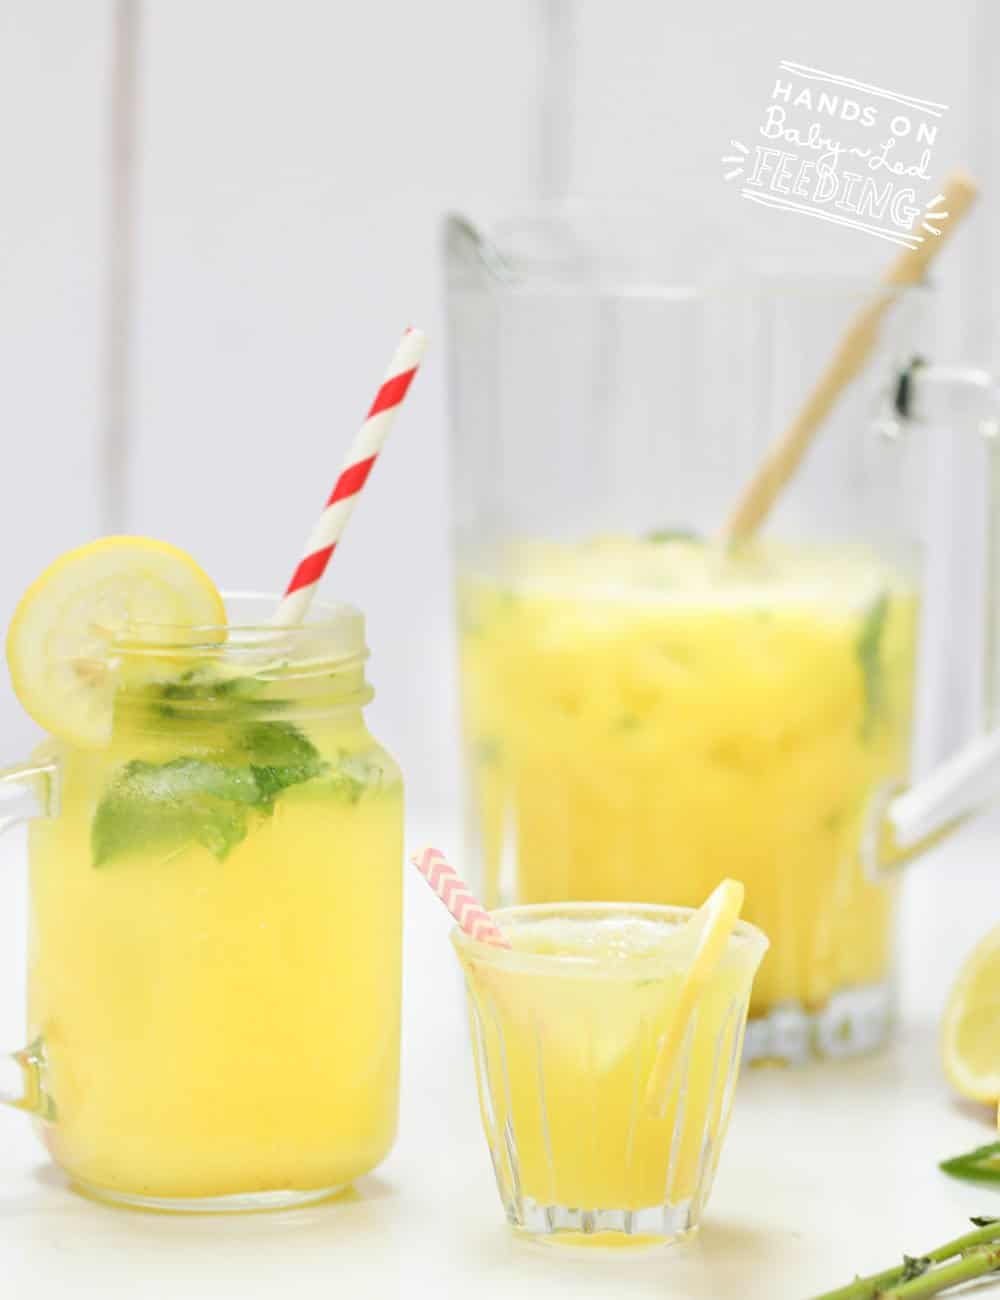 Sugar Free Lemonade Recipe Images